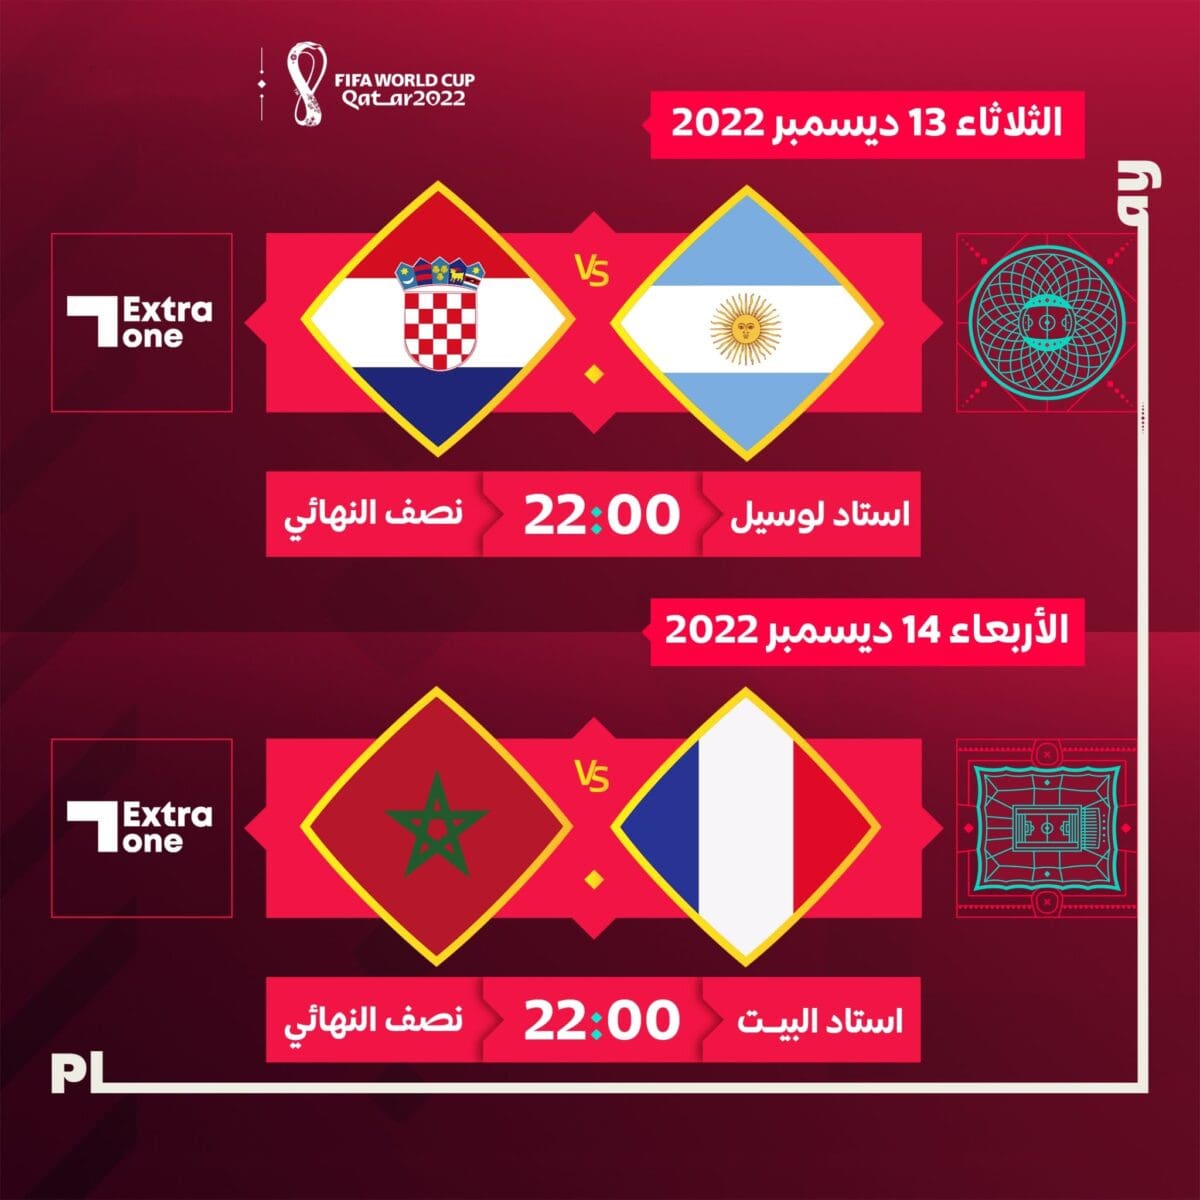 مواجهات نصف نهائي كأس العالم قطر 2022 ومواعيدها والملاعب المستضيفة لها